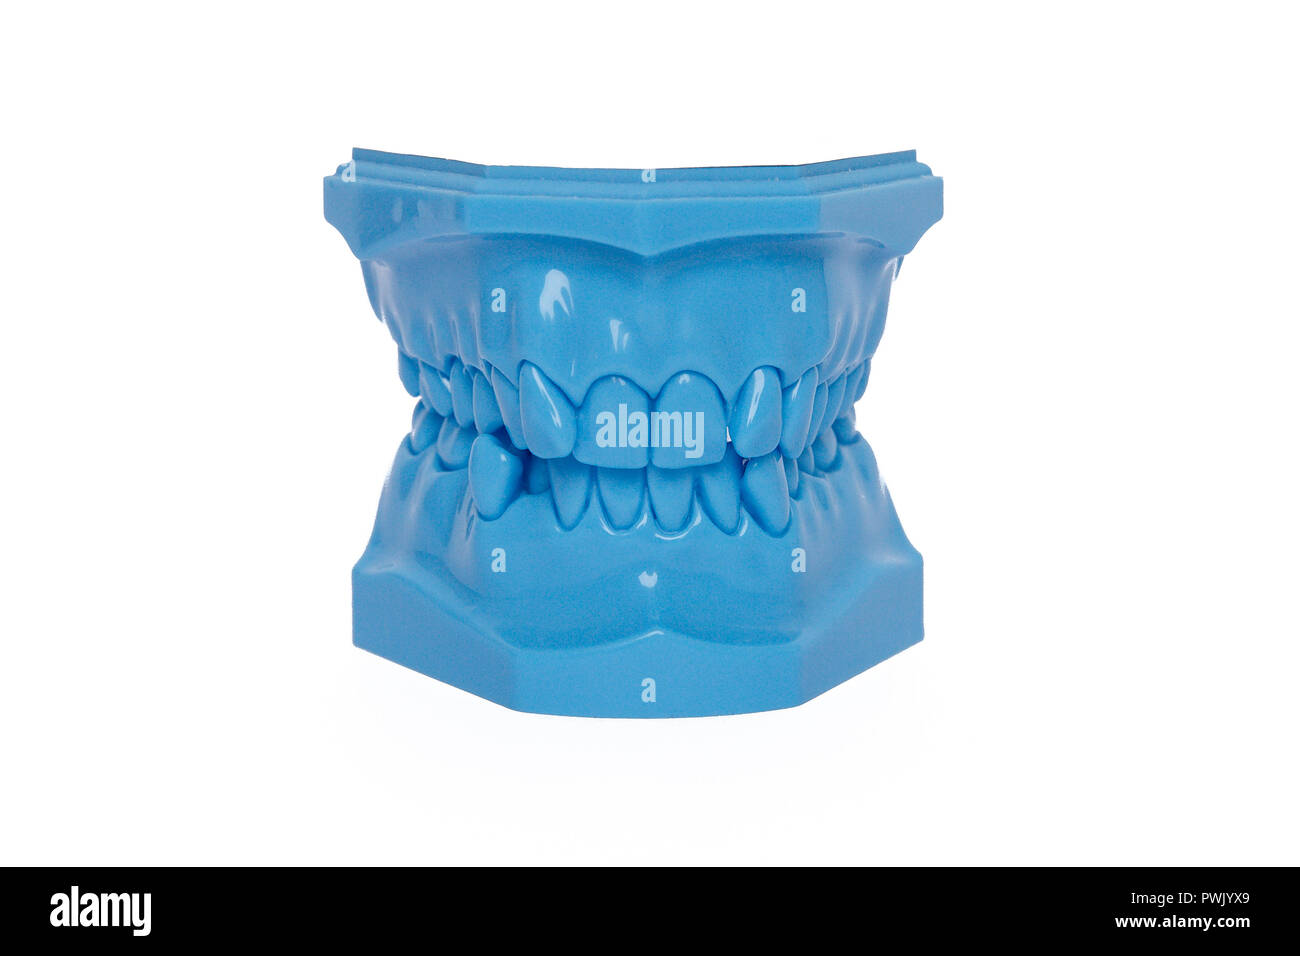 Blu denti ortodontico modello utilizzato in odontoiatria per la dimostrazione e la finalità educativa. Foto Stock